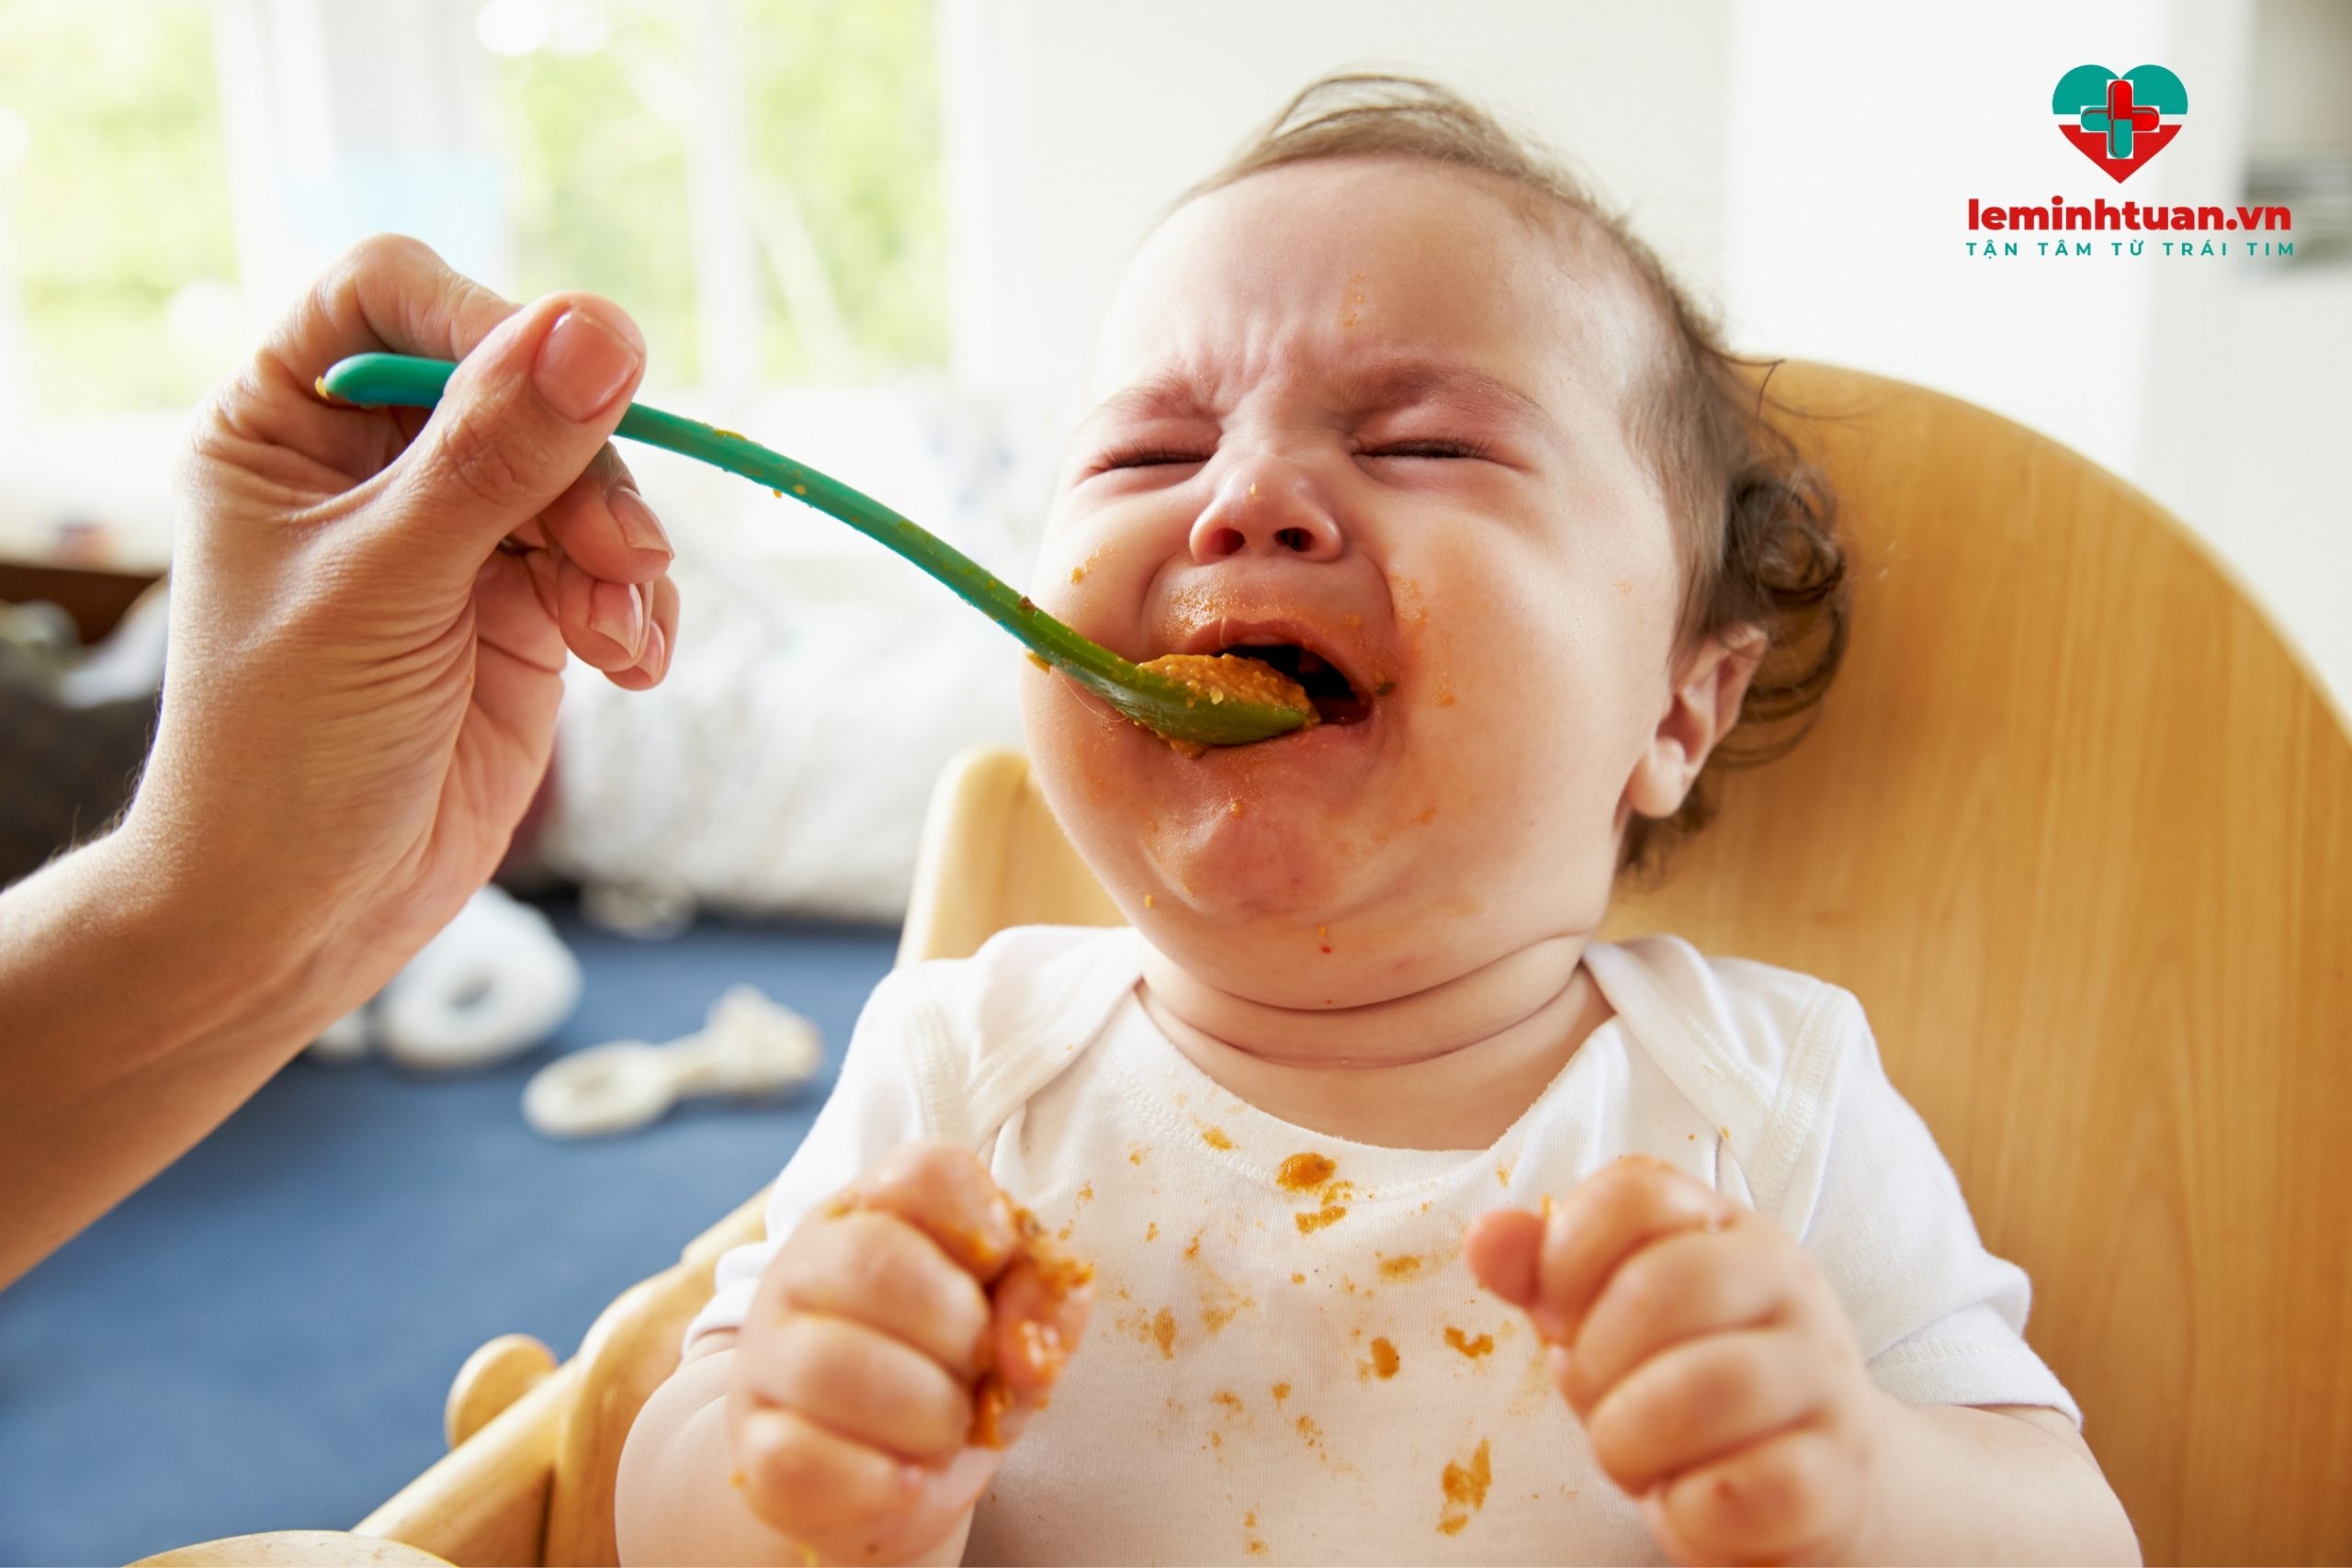 Em bé không chịu ăn, biếng ăn mẹ phải làm sao? Lời khuyên từ bác sĩ